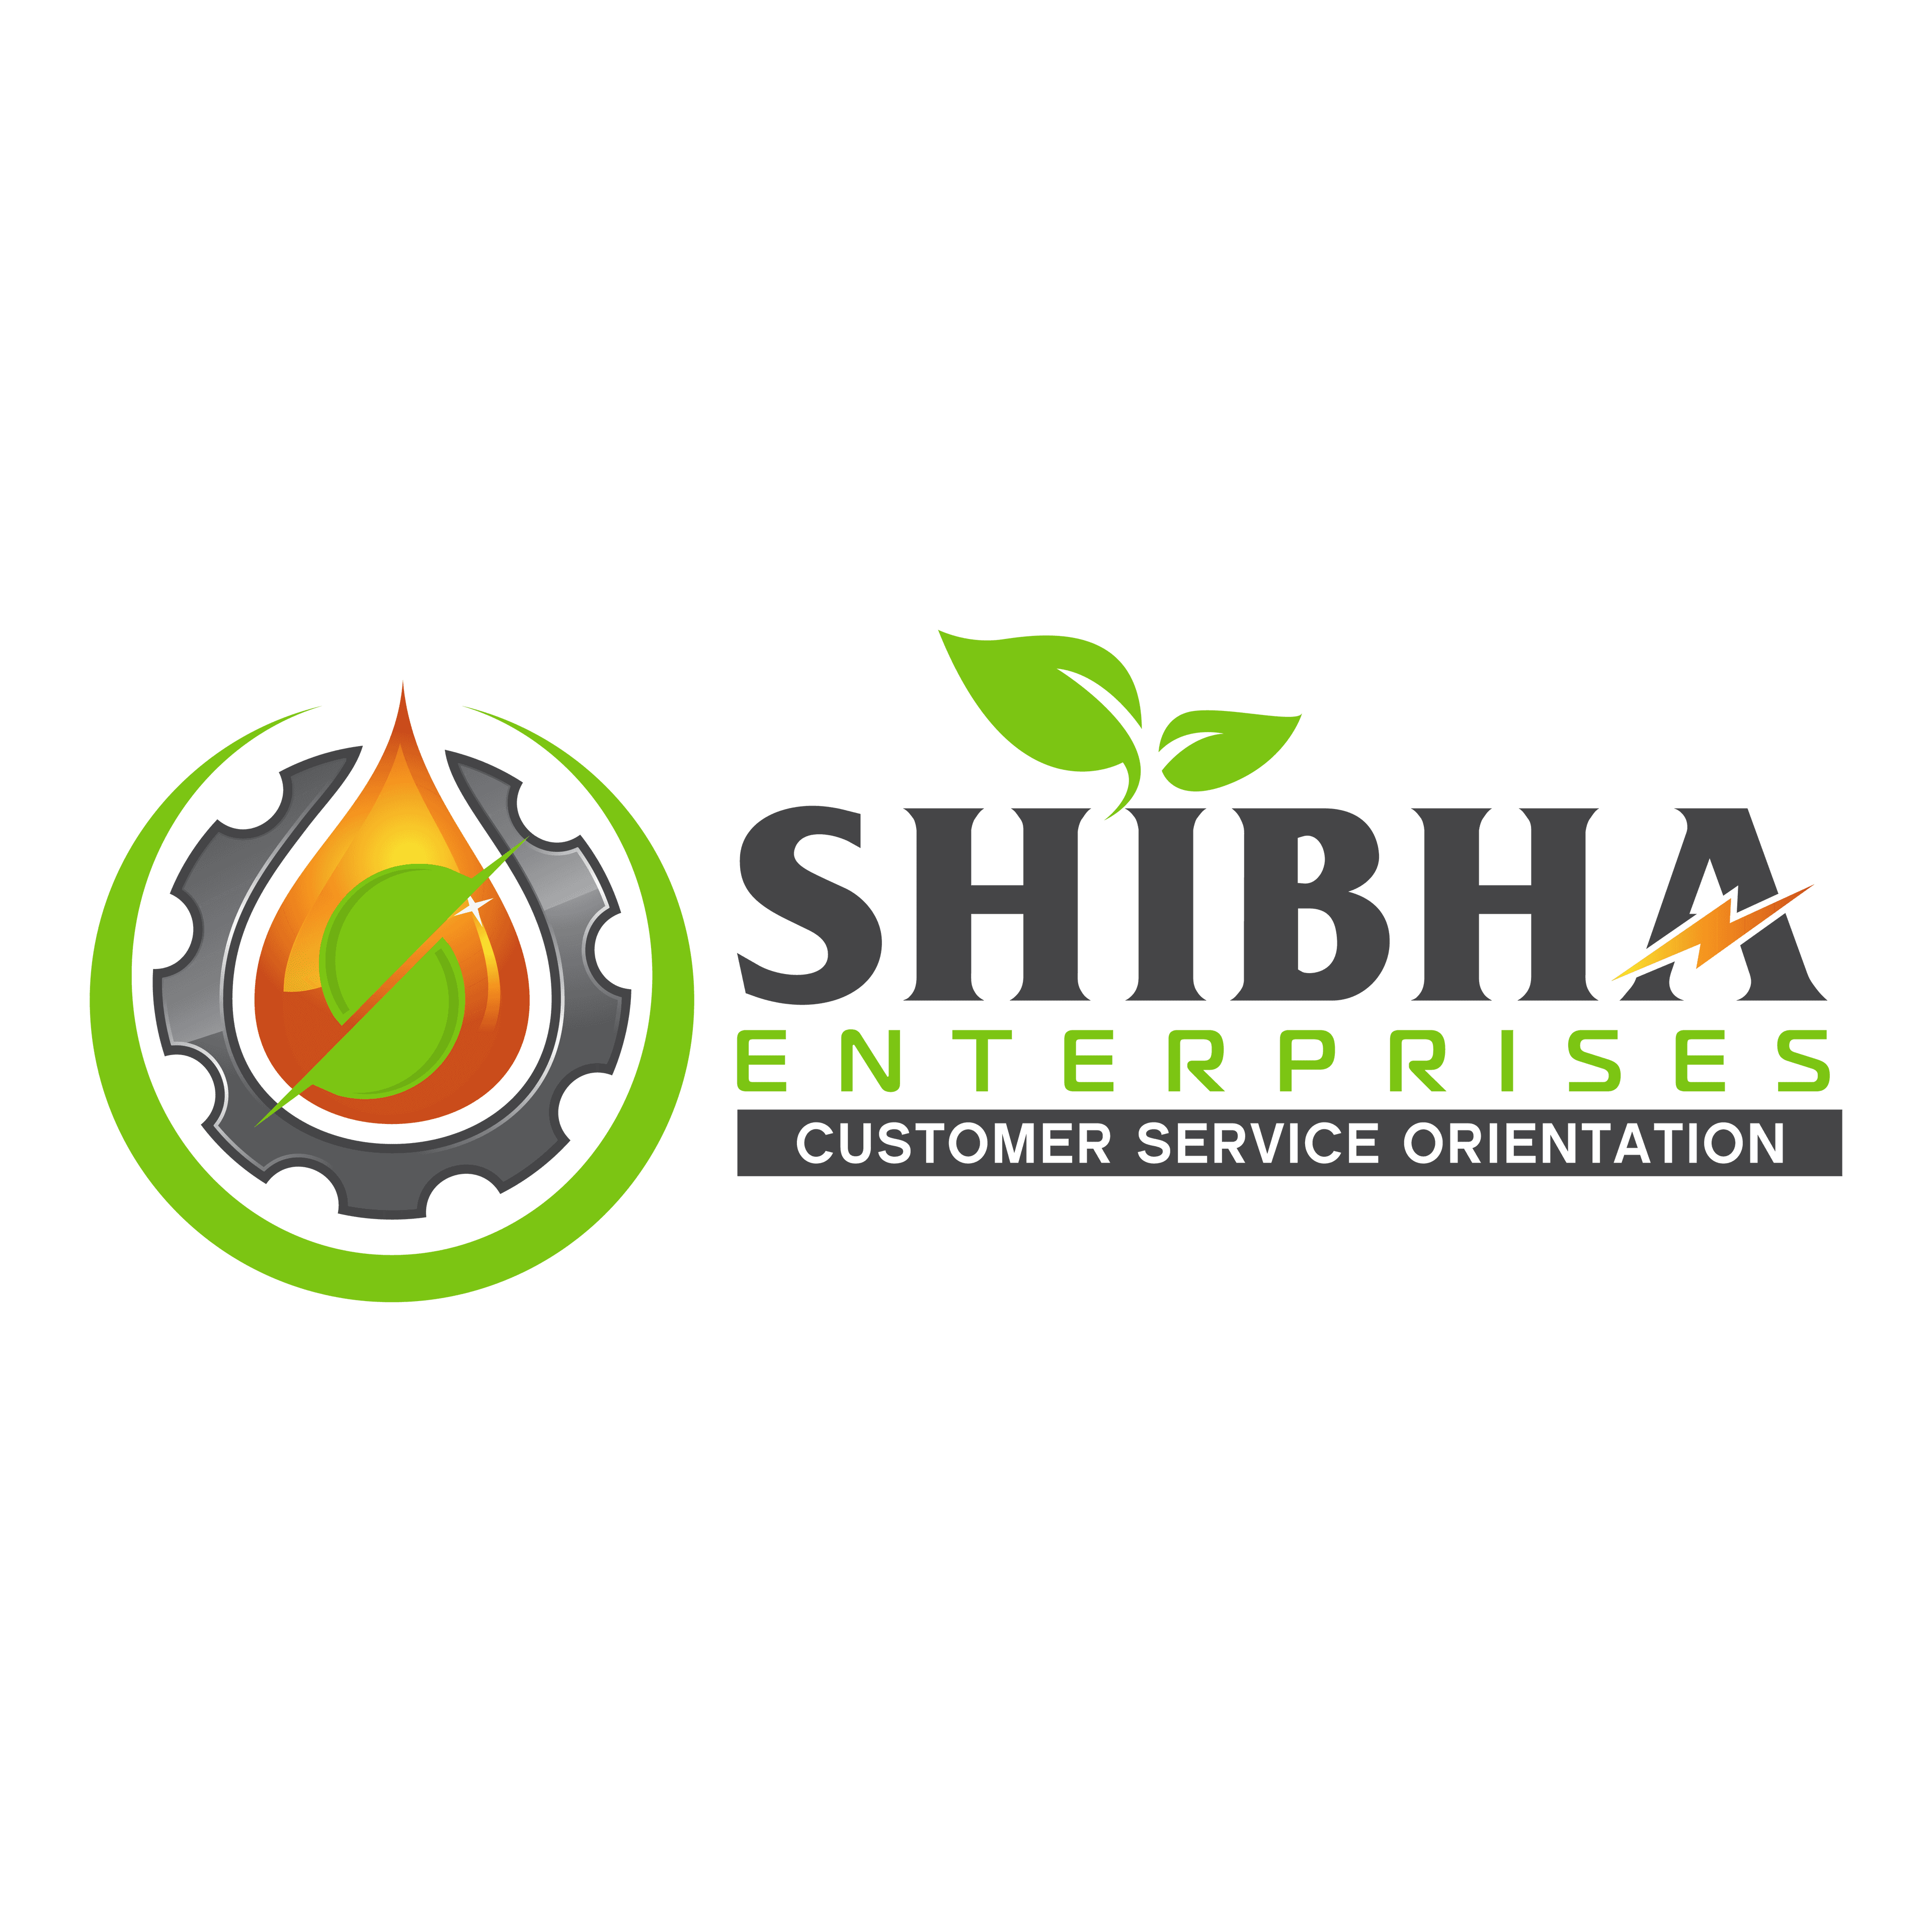 SHIBHA ENTERPRISES